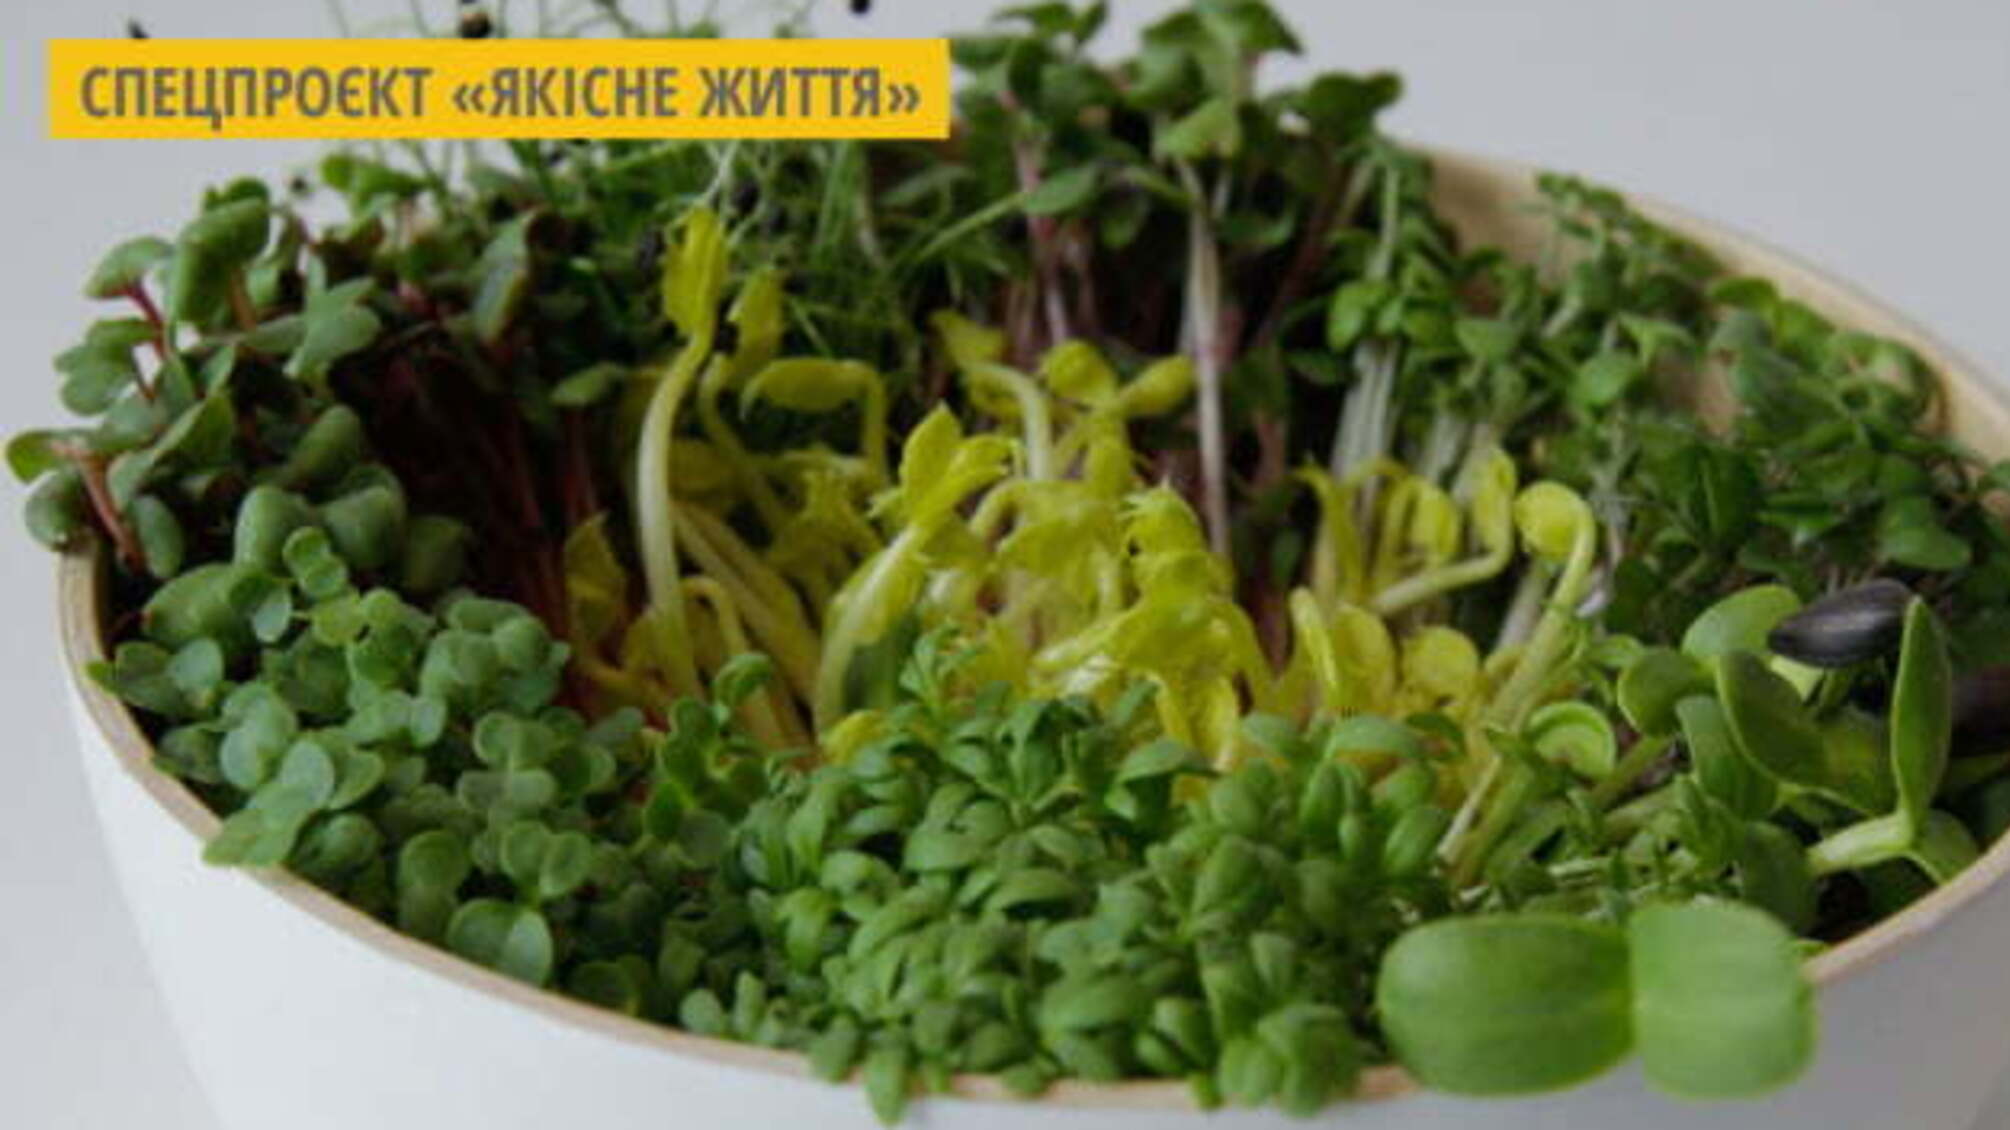 Івано-Франківський фермер пропонує розпочати весну з 50 грамів мікрозелені